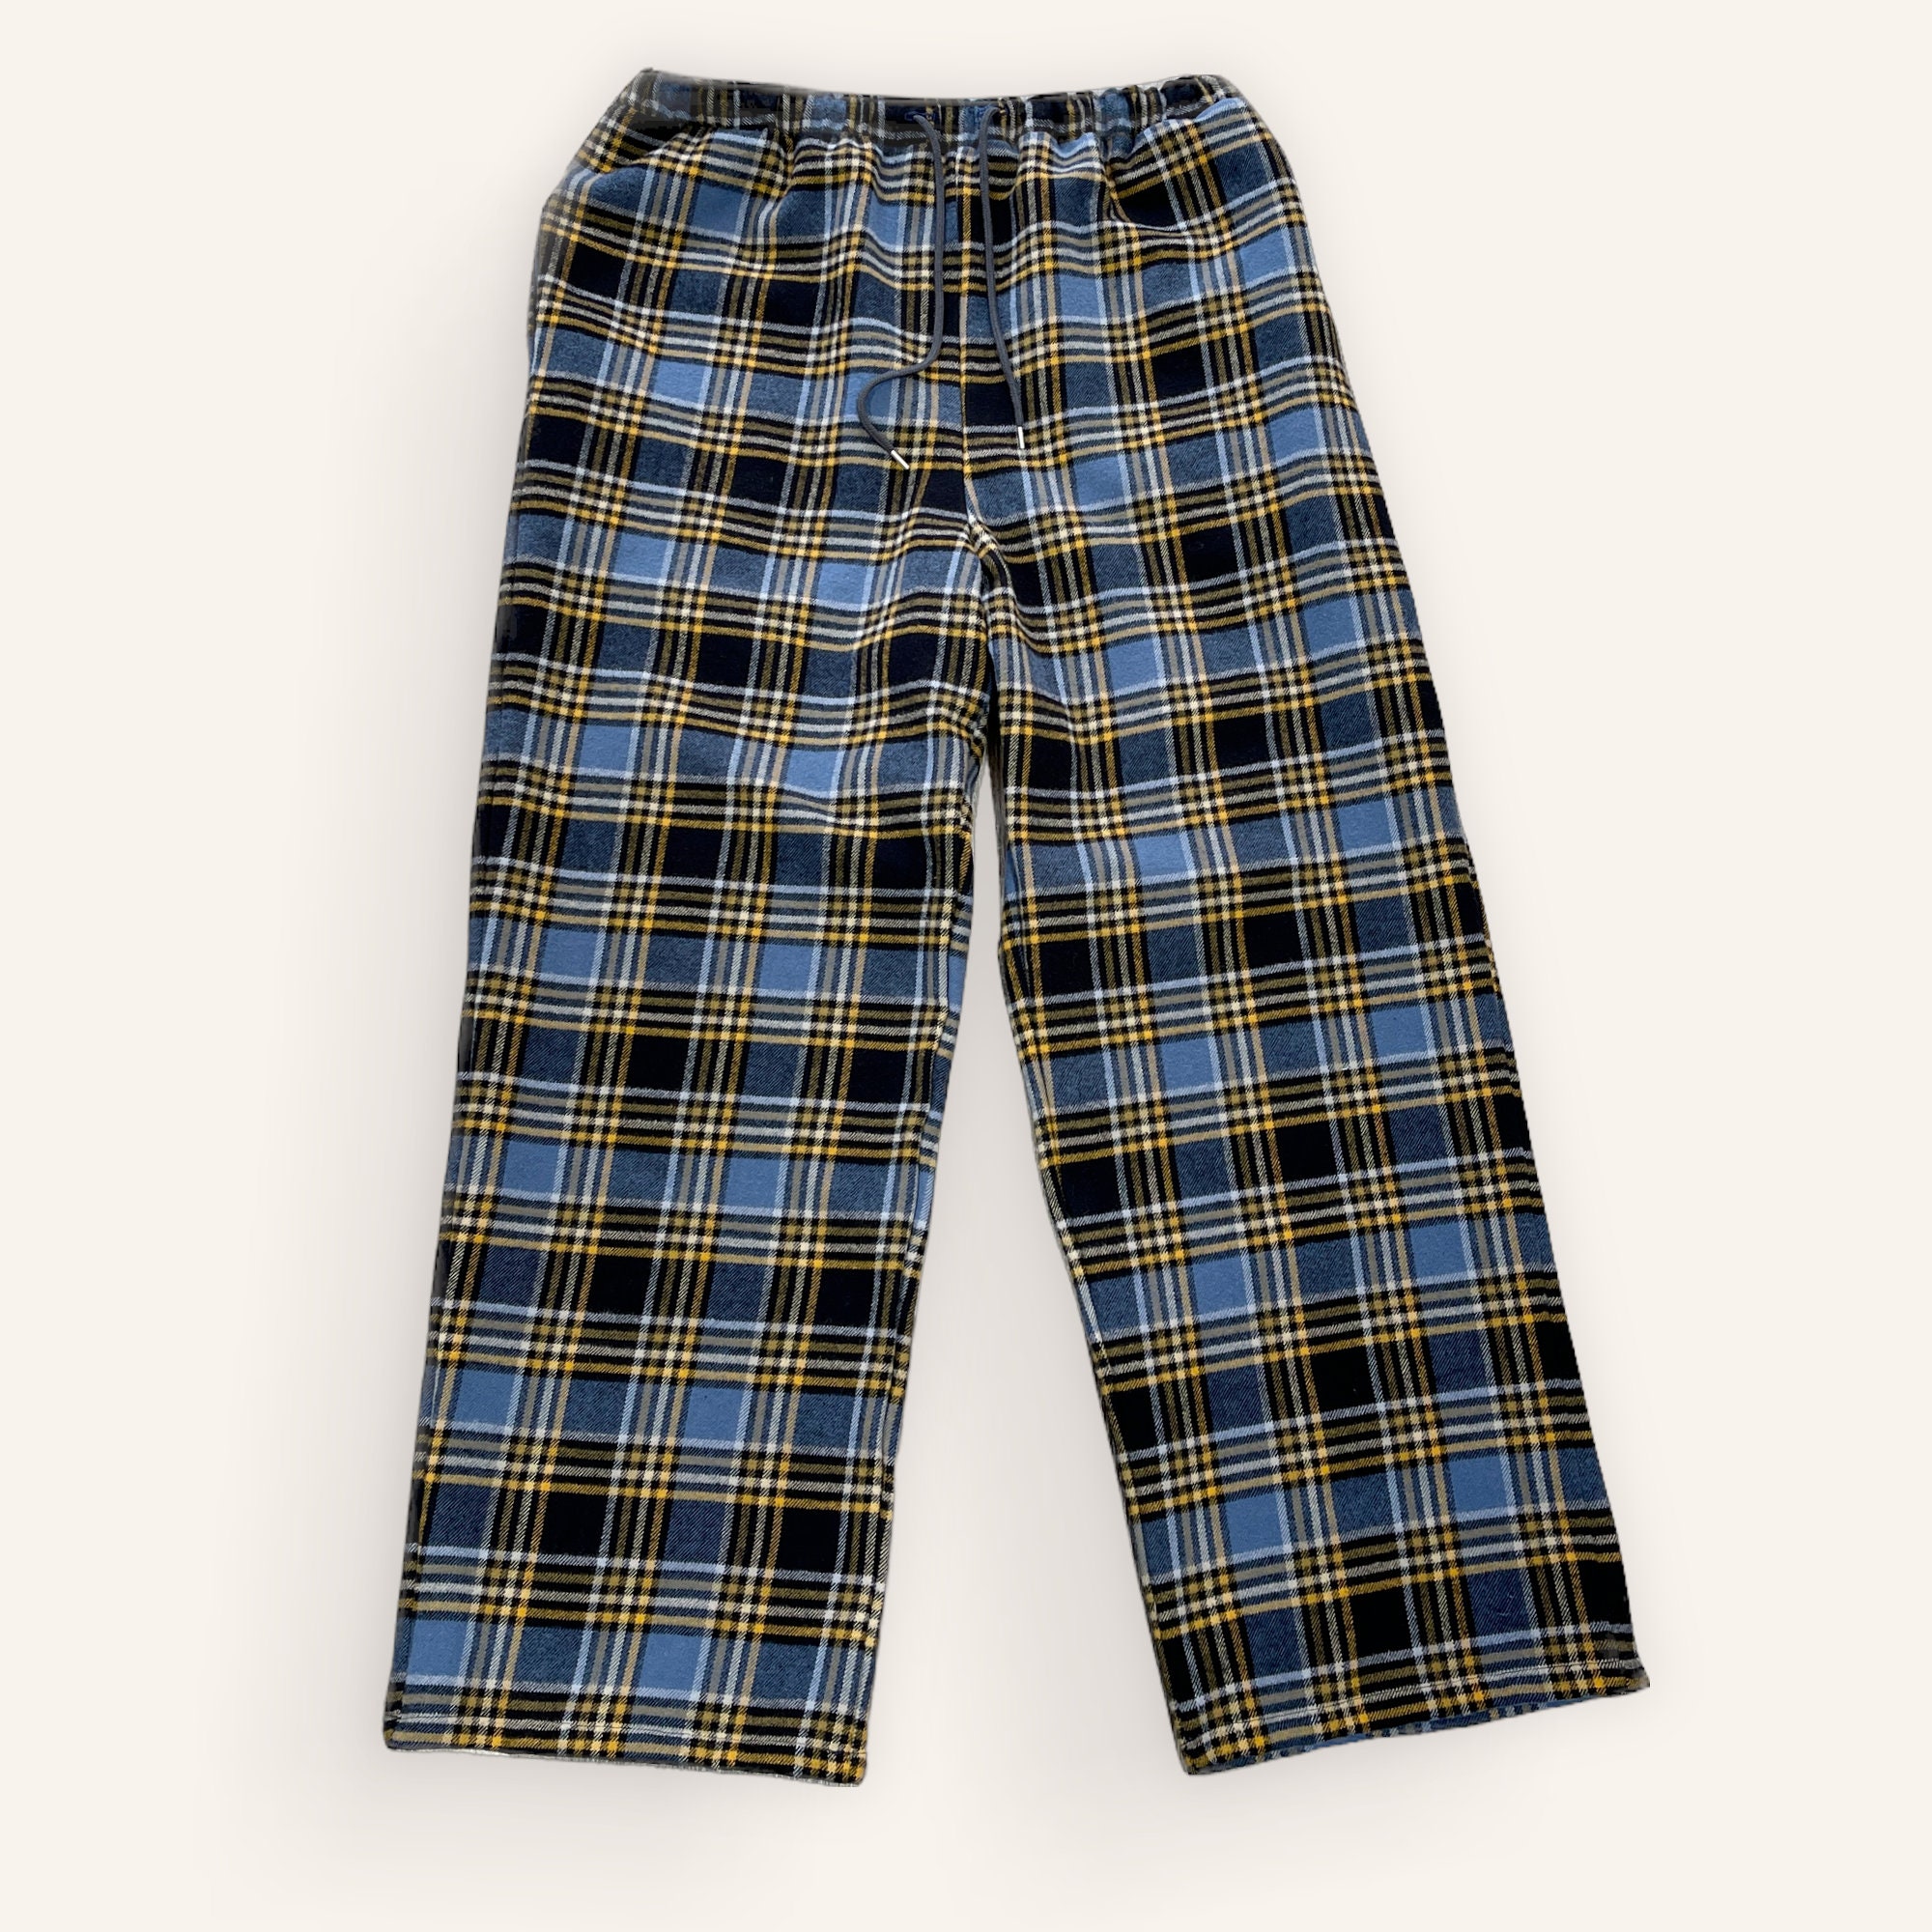 Origin Flannel Check PJ Pants (Cobalt Blue)